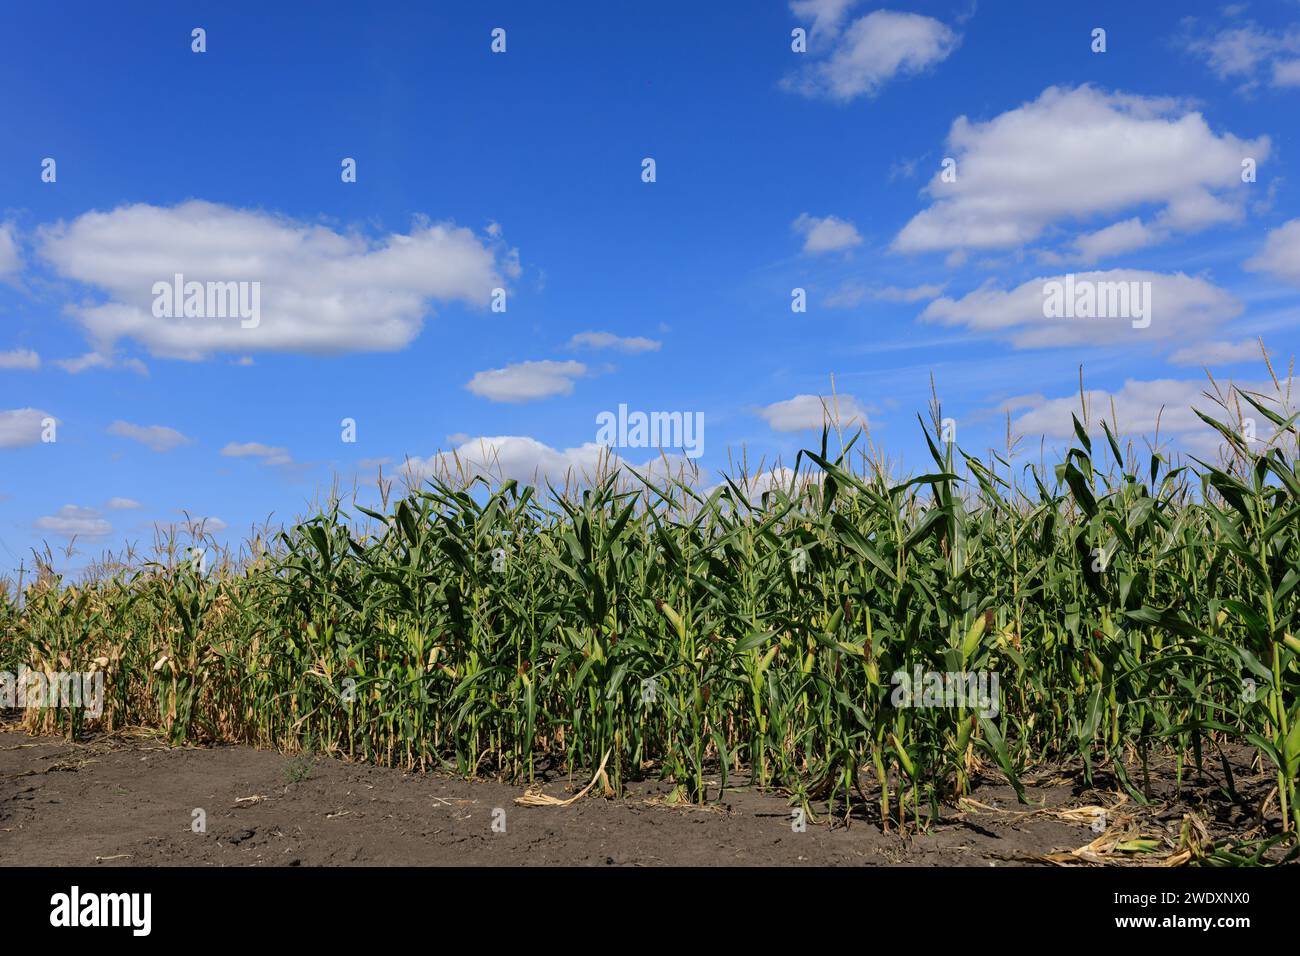 raccolto di mais in campo, cielo blu. Foto di alta qualità Foto Stock